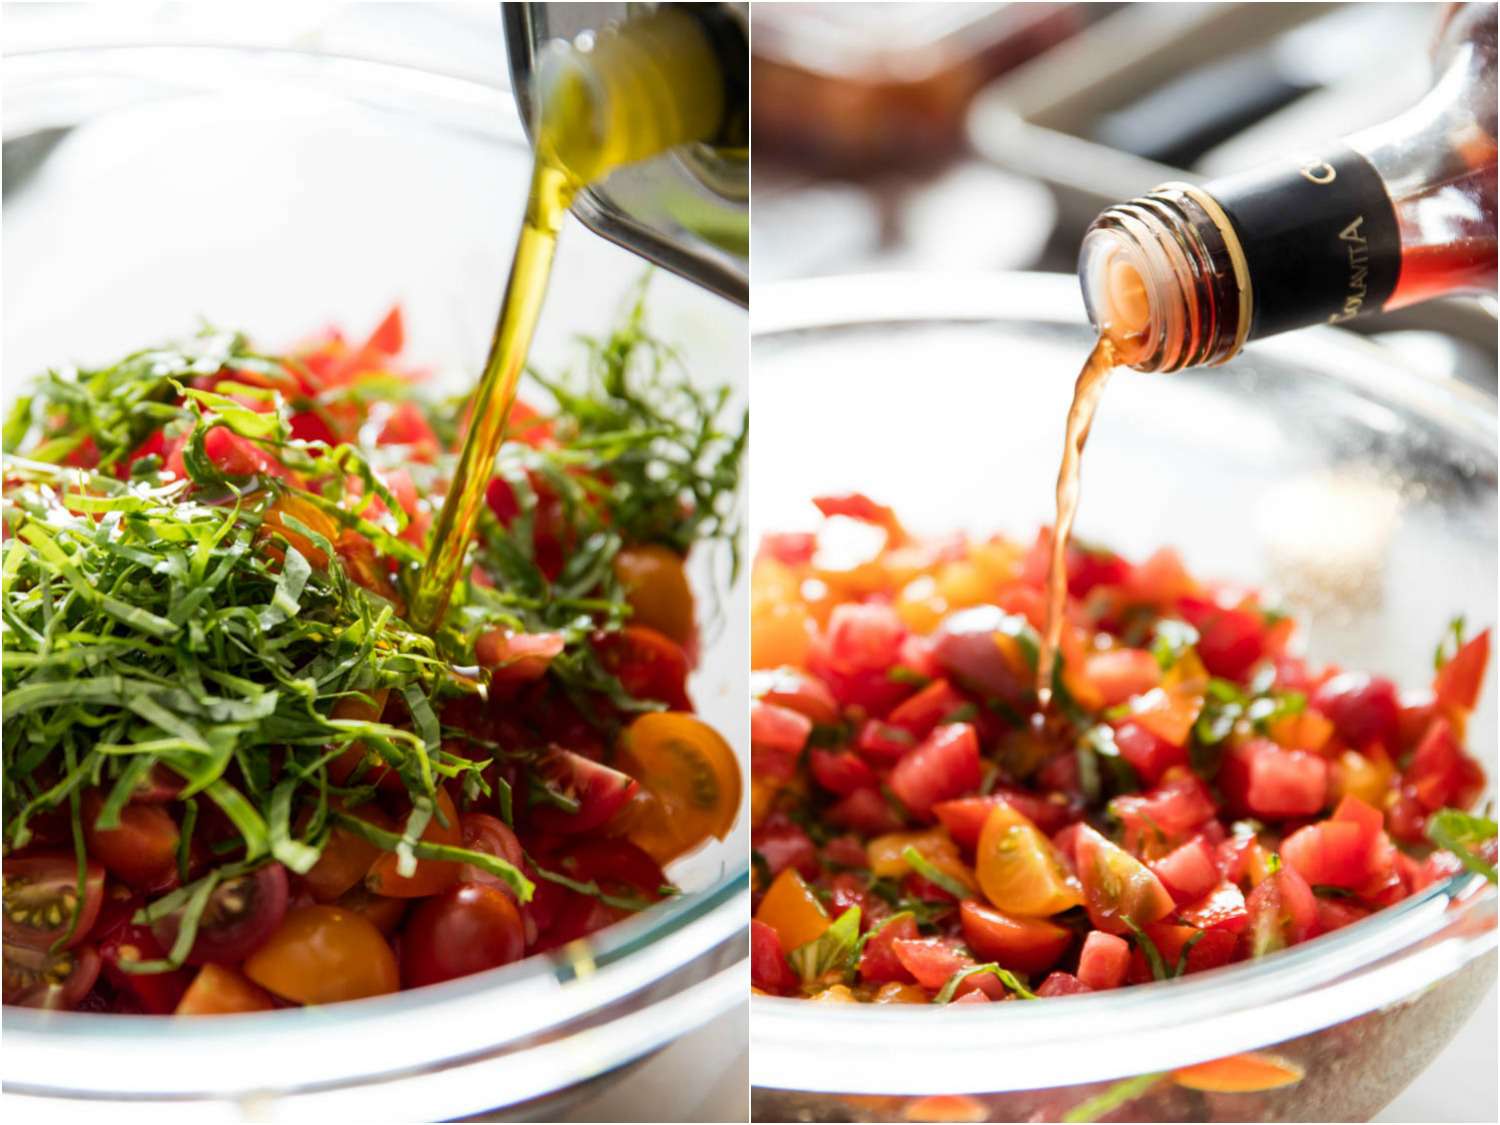 拼贴画展示了一碗用橄榄油和醋腌制的切片西红柿和罗勒丝。gydF4y2Ba